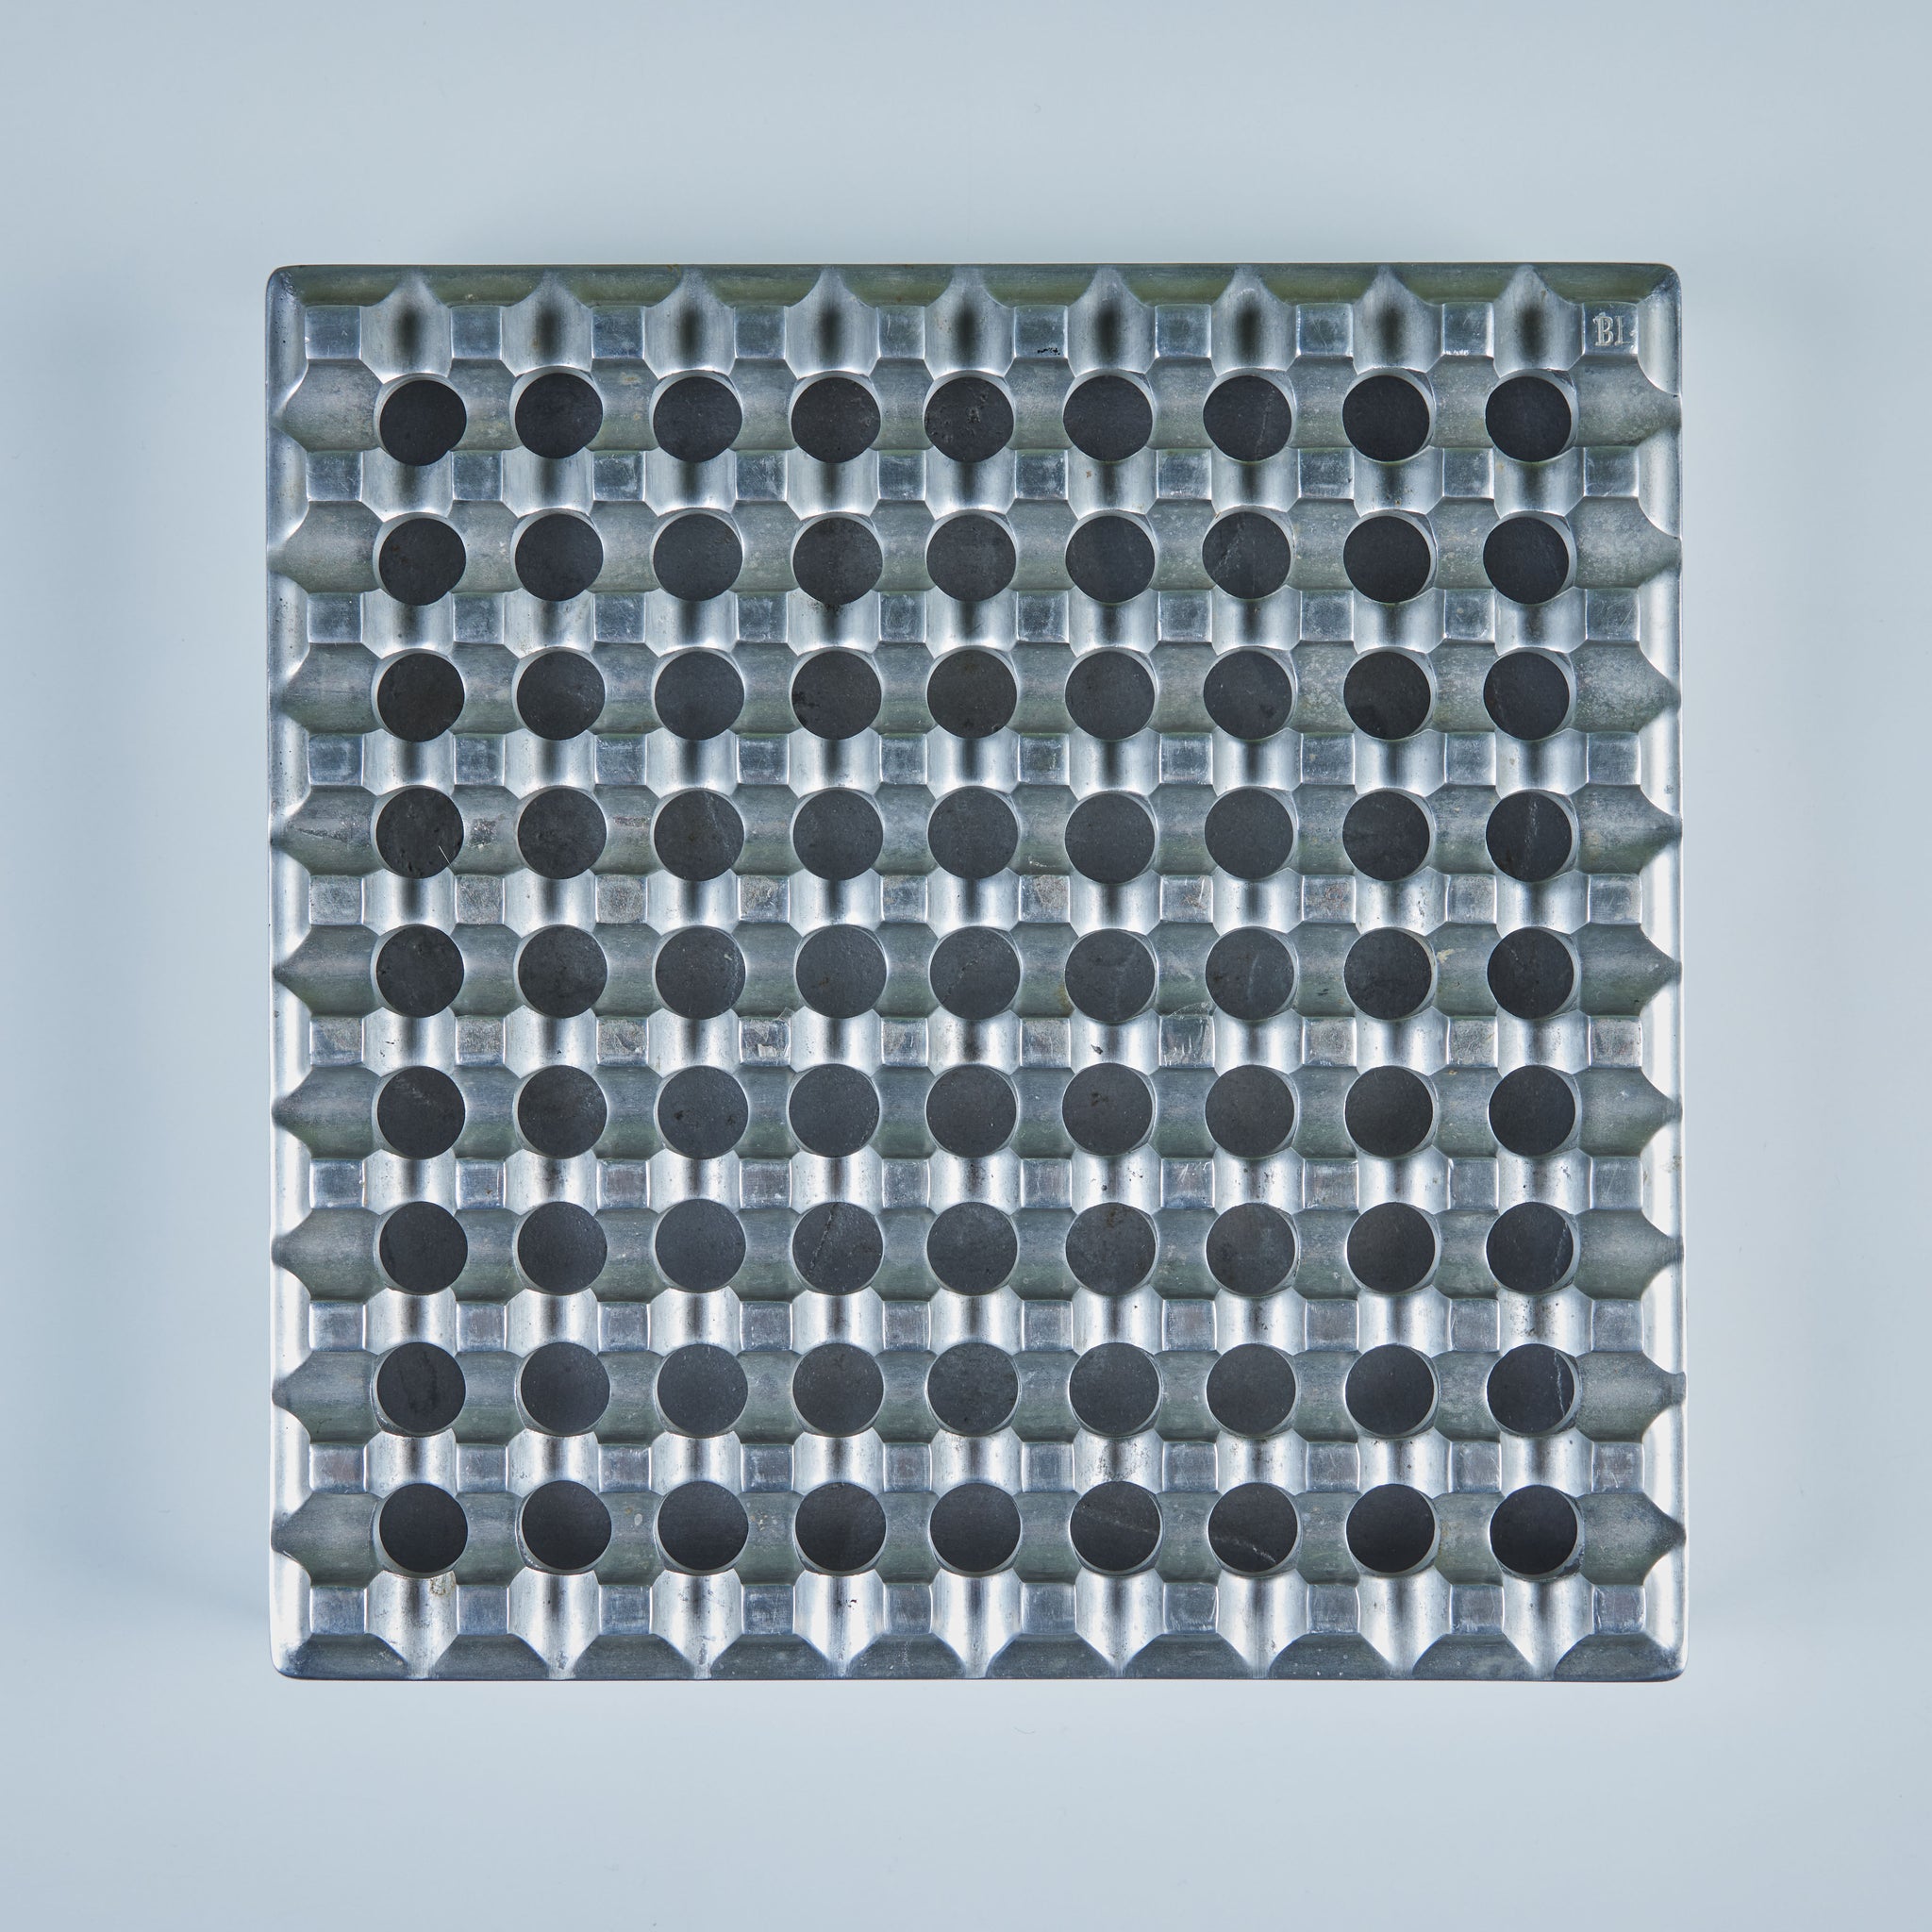 Aluminum Ultima 30 Ashtray by Holger Bäckström & Bo Ljungberg for Beck & Jung